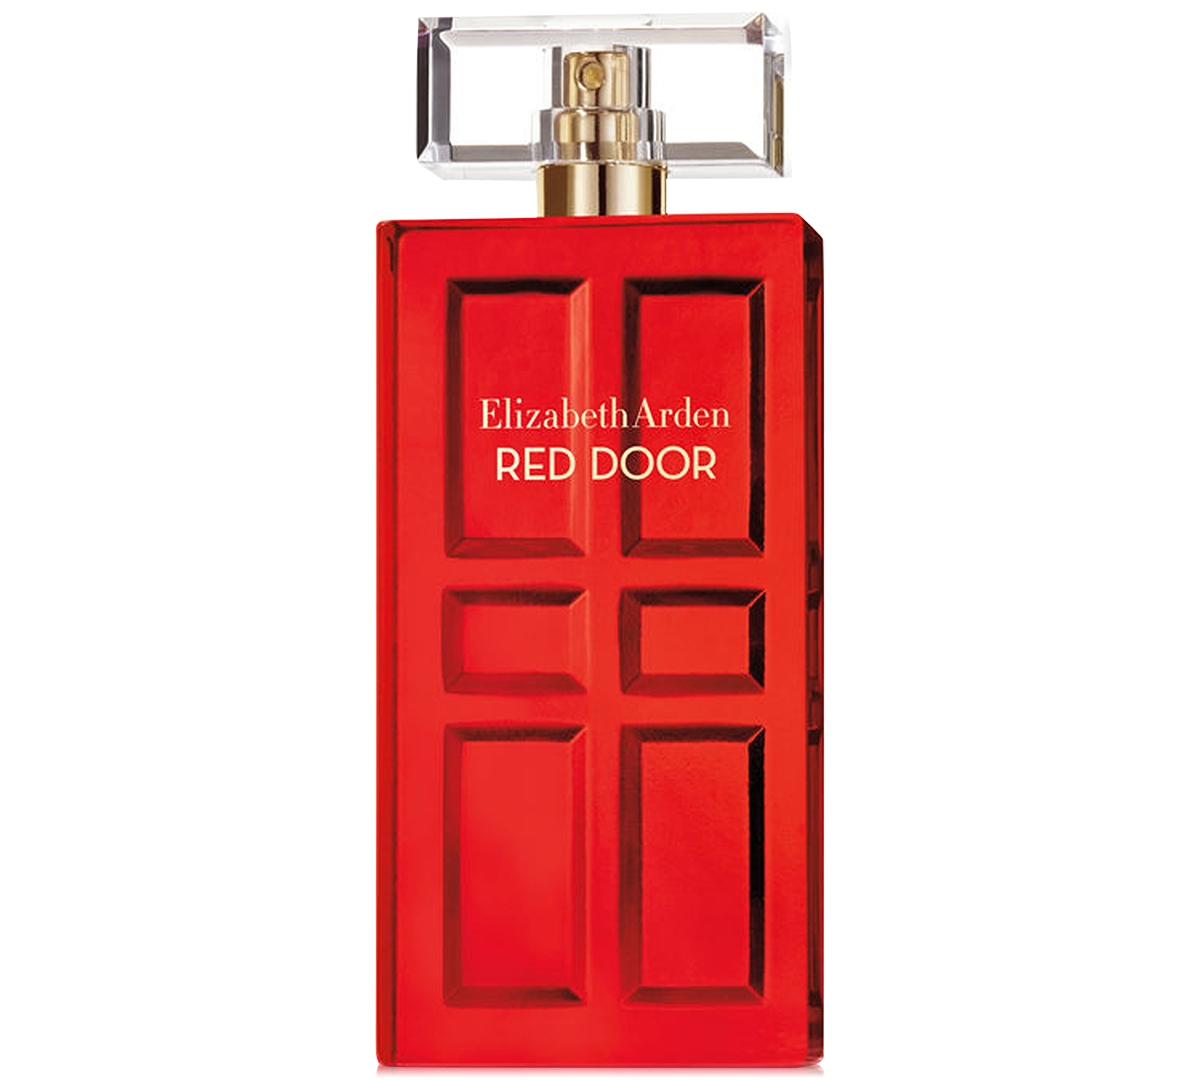 Elizabeth Arden Red Door Eau de Parfum Spray, 1.7 oz.